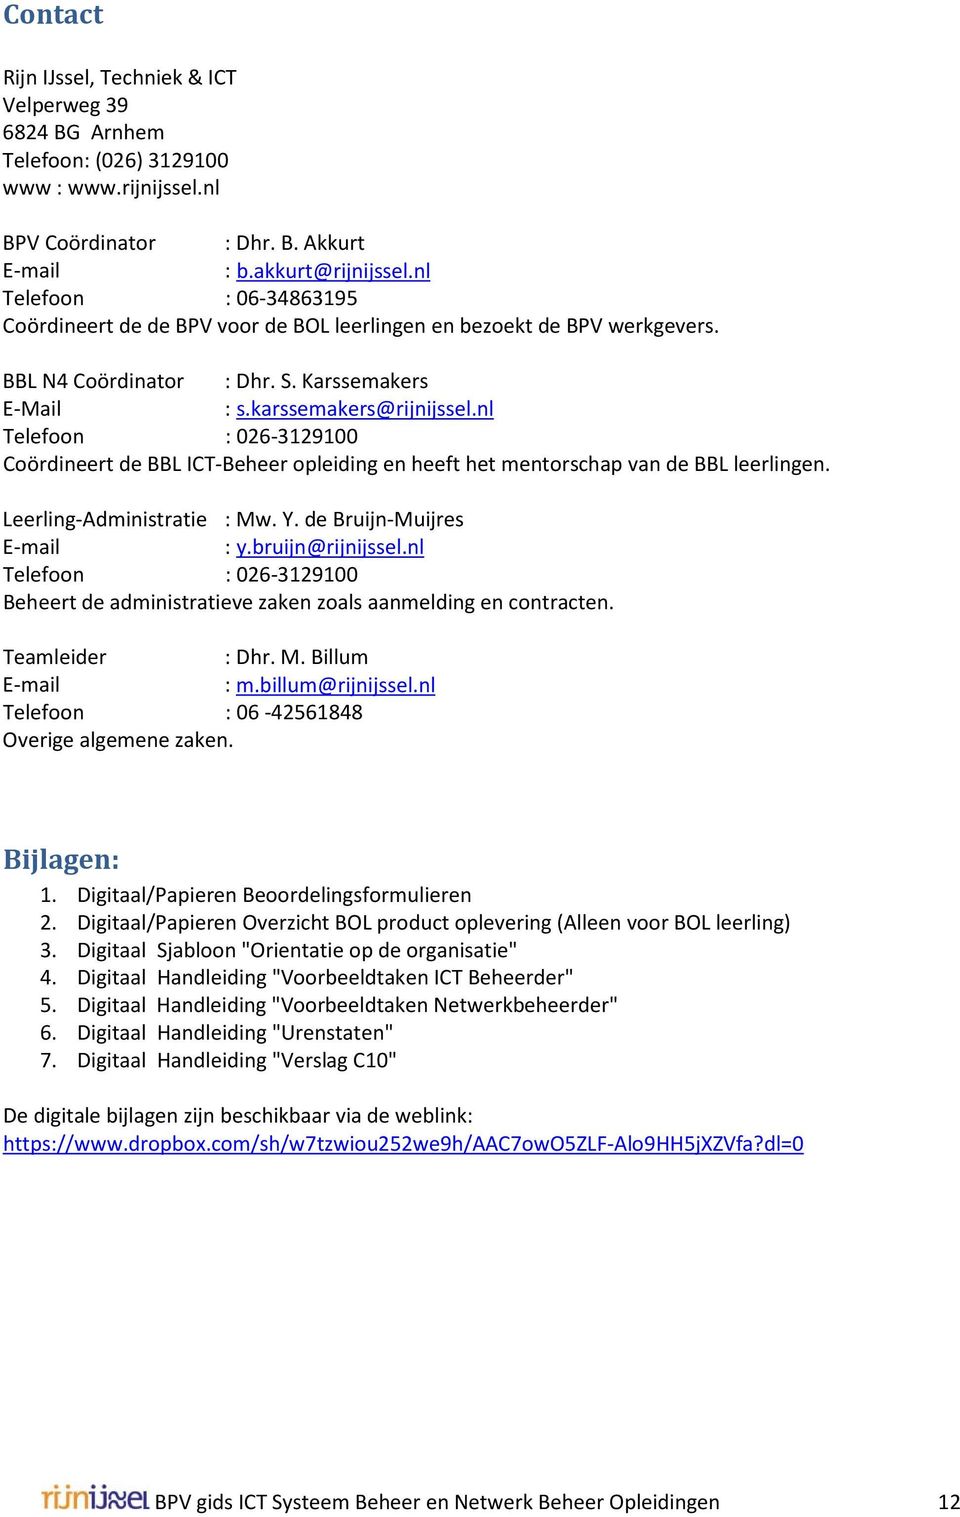 nl Telefoon : 026-3129100 Coördineert de BBL ICT-Beheer opleiding en heeft het mentorschap van de BBL leerlingen. Leerling-Administratie : Mw. Y. de Bruijn-Muijres E-mail : y.bruijn@rijnijssel.